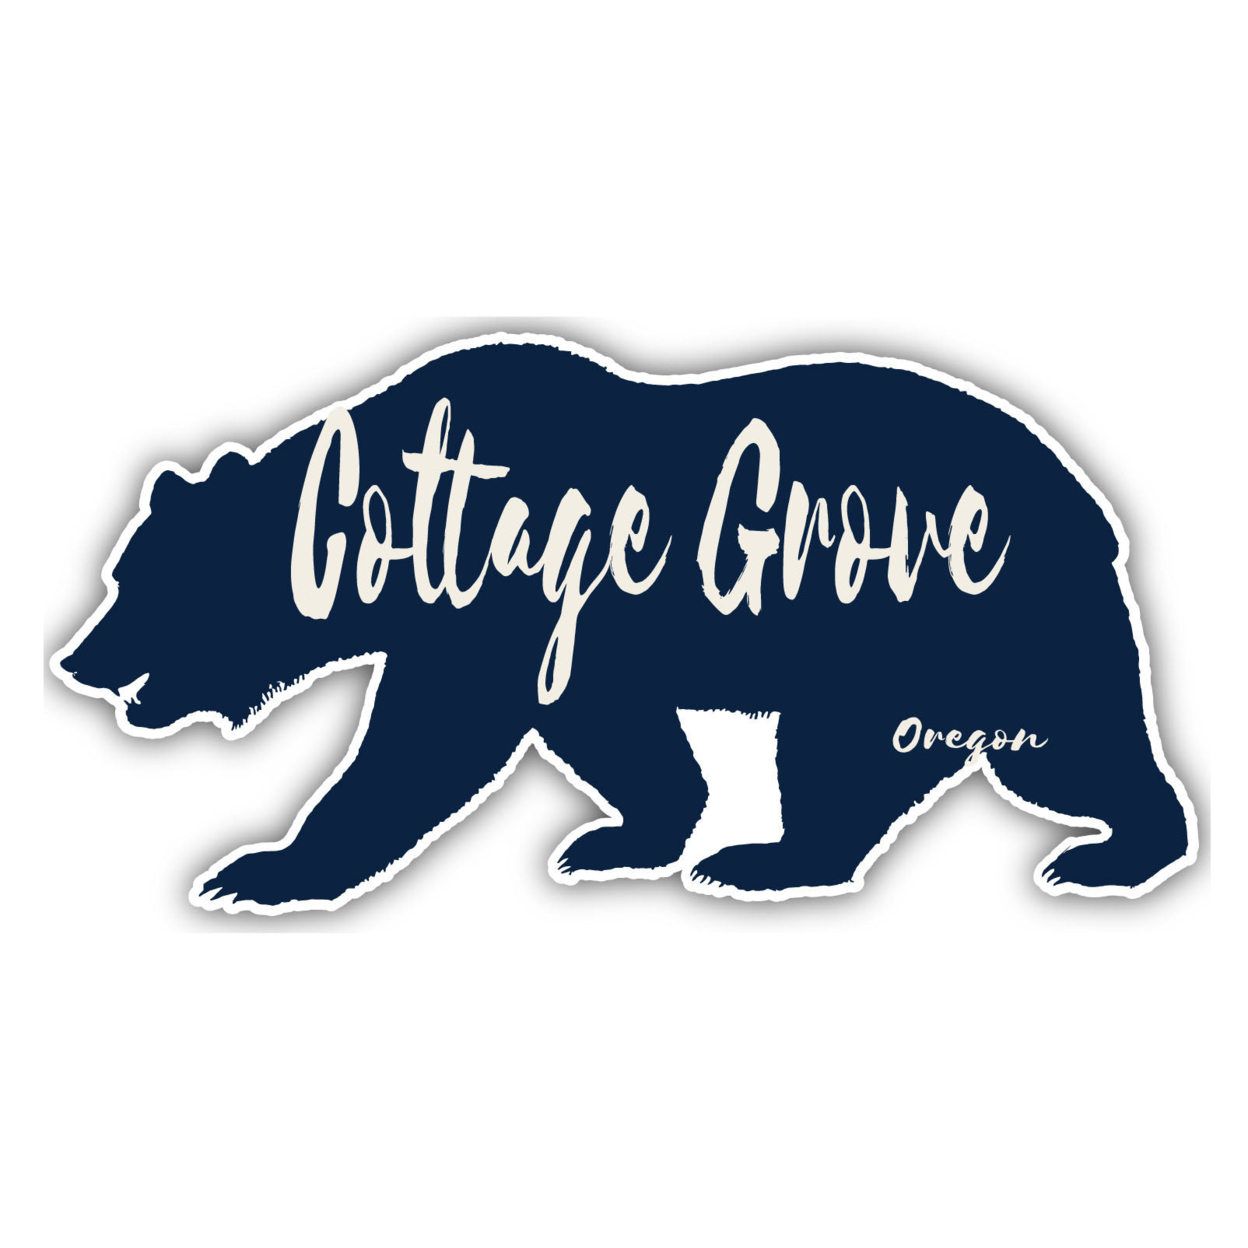 Cottage Grove Oregon Souvenir Decorative Stickers (Choose Theme And Size) - Single Unit, 2-Inch, Tent